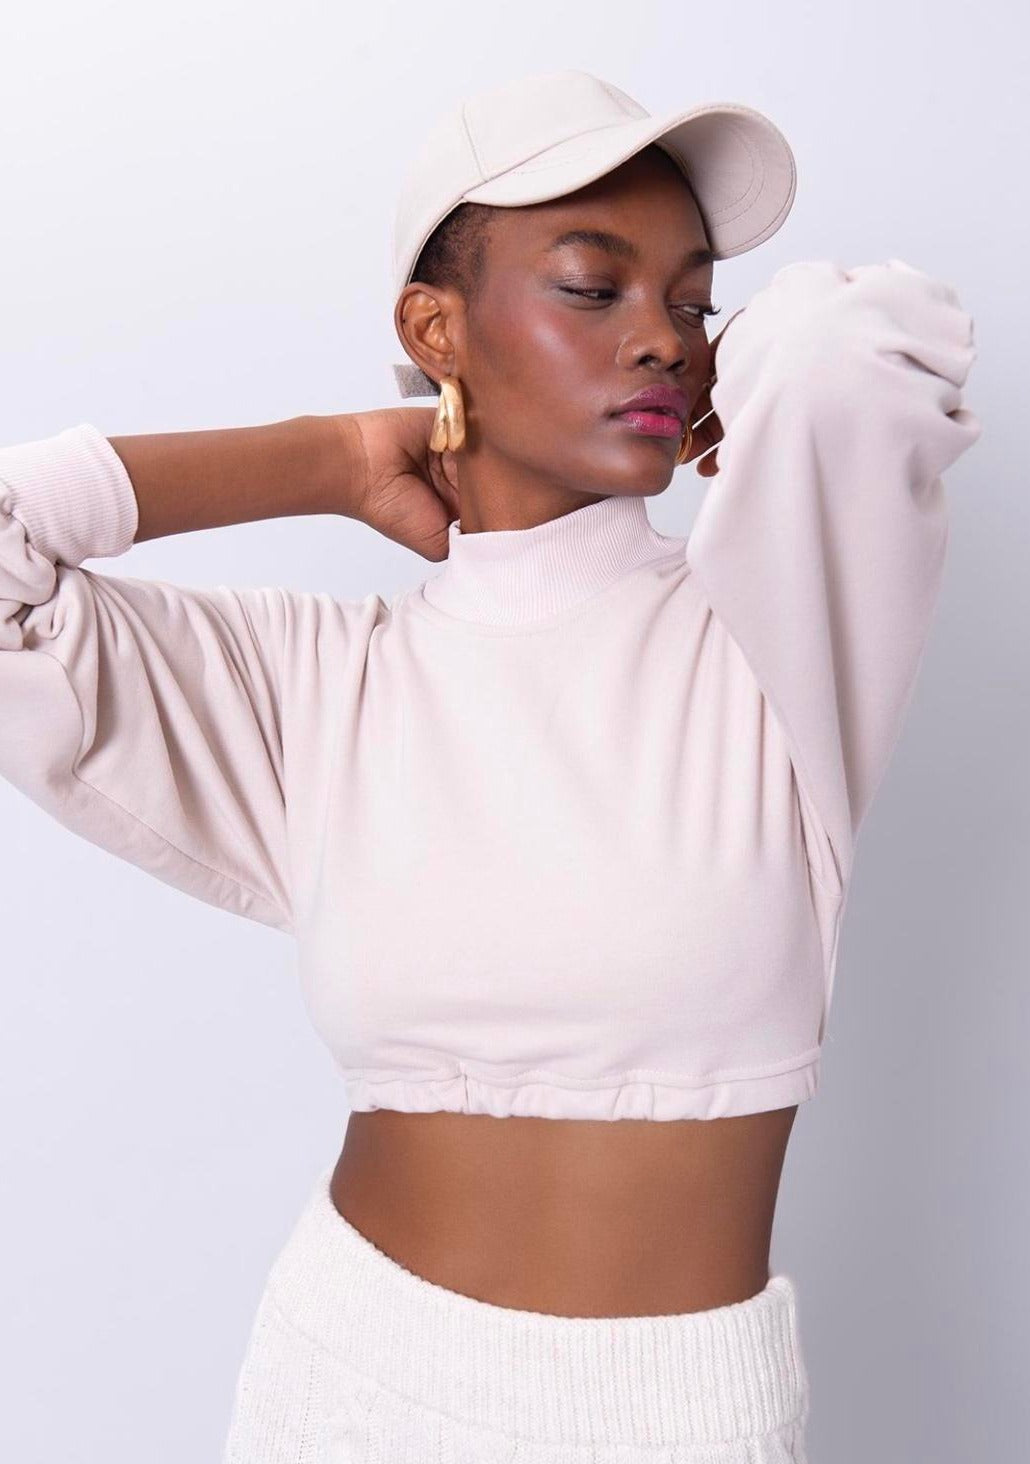 Дамска блуза BELSSA  https://bvseductive.com/products/дамска-блуза-belssa  50 % памук 50 % полиестер модерна къса блуза в бежов цвят модел с ефектен гол гръб и връзки позволява лесно да се комбинира супер предложение за сезон пролет/есен тренди избор за Вашата визия&nbsp;